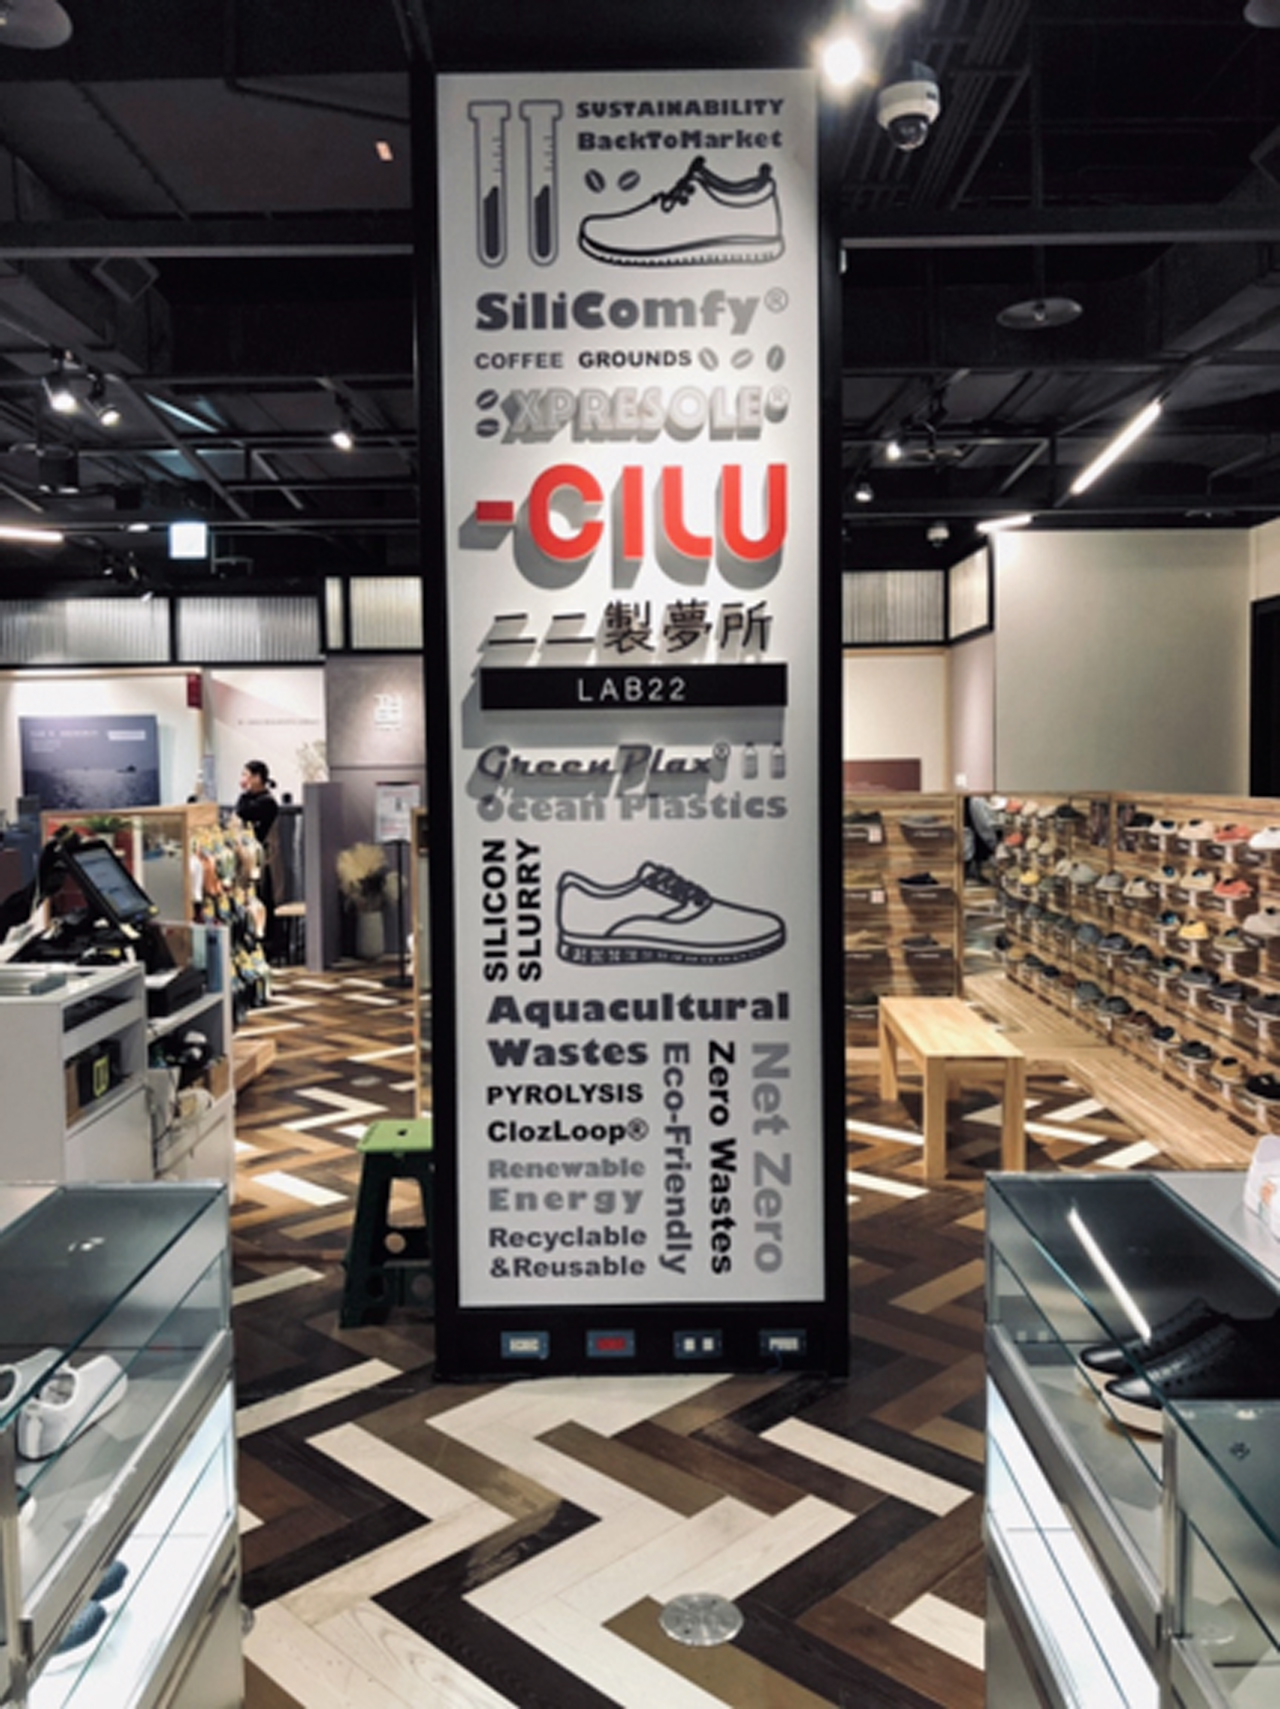 「ccilu馳綠」國際休閒鞋品牌，先是在日本打開市場，如今品牌商品布局超過全球100個市場。馳綠提供